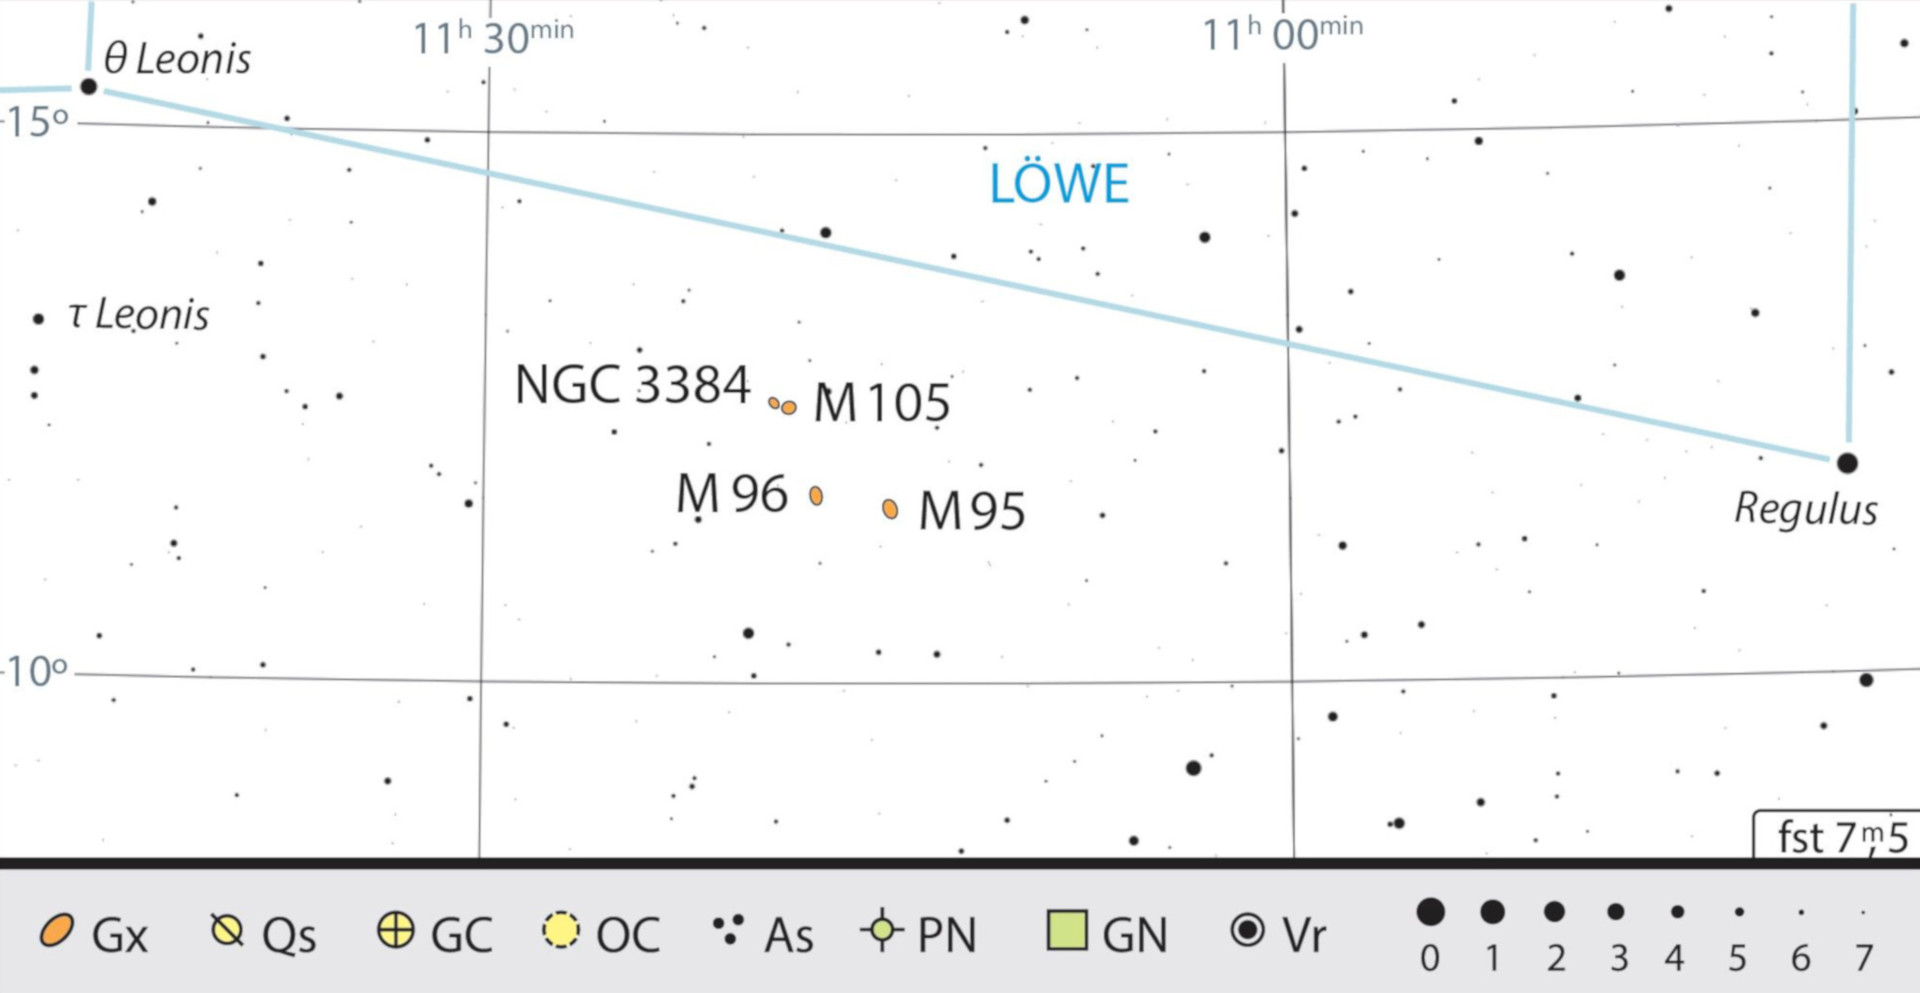 Pe lângă M 95 și M 96, în imediata vecinătate se află și alte galaxii, cum ar fi M 105 și NGC 3384. J. Scholten 